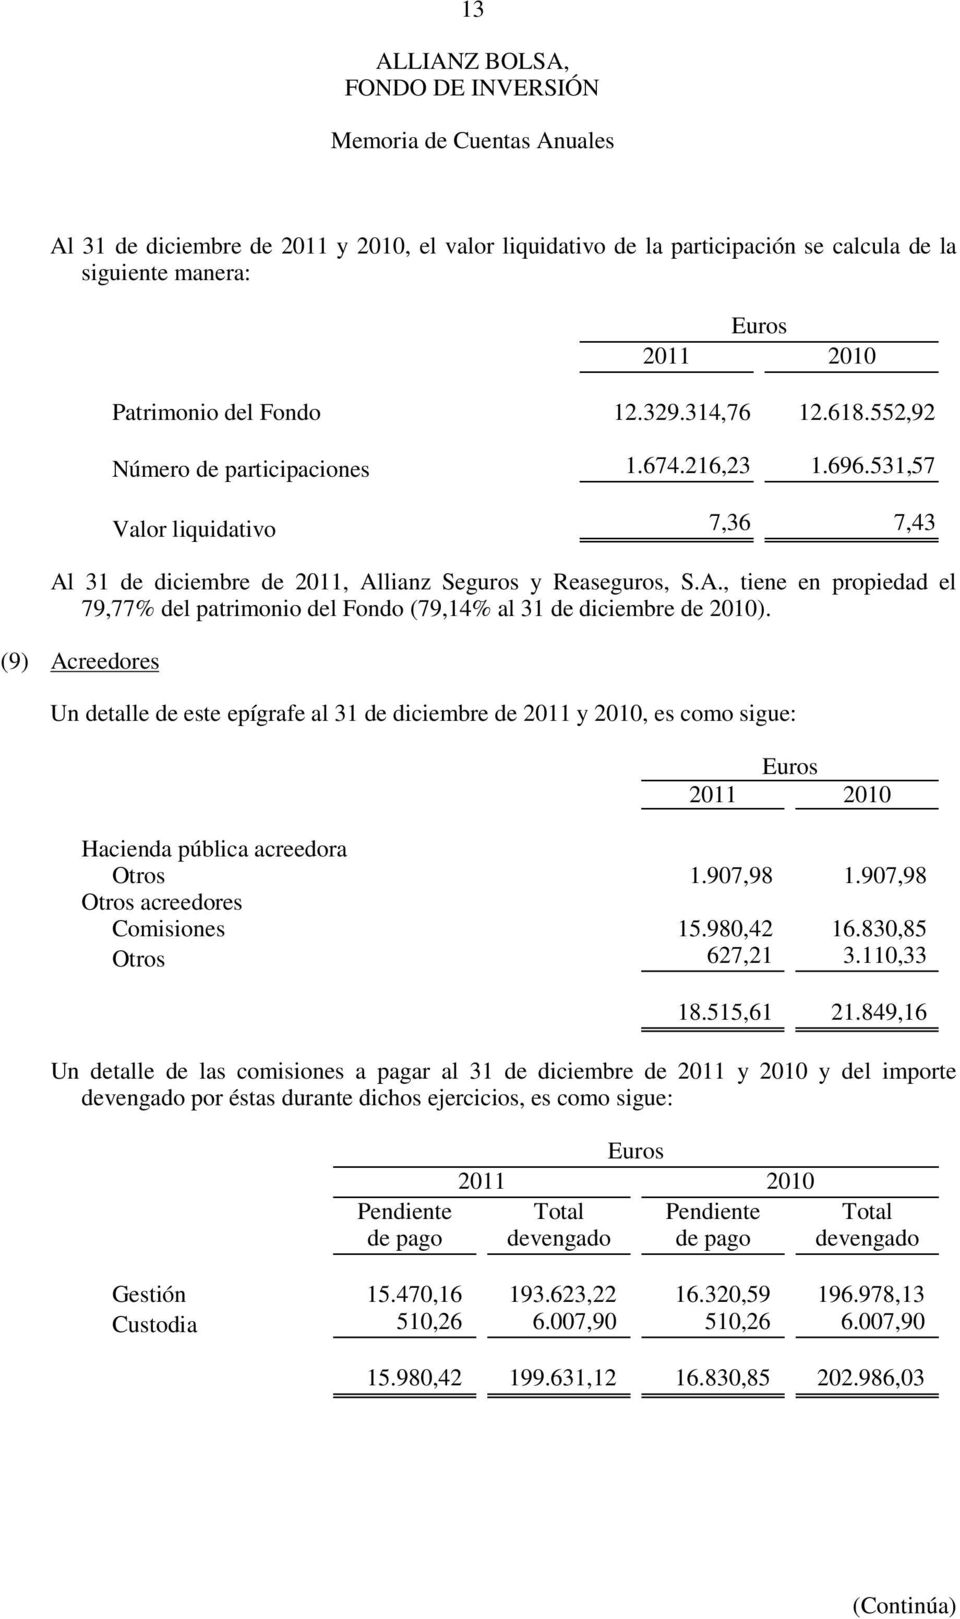 (9) Acreedores Un detalle de este epígrafe al 31 de diciembre de 2011 y 2010, es como sigue: Euros 2011 2010 Hacienda pública acreedora Otros 1.907,98 1.907,98 Otros acreedores Comisiones 15.